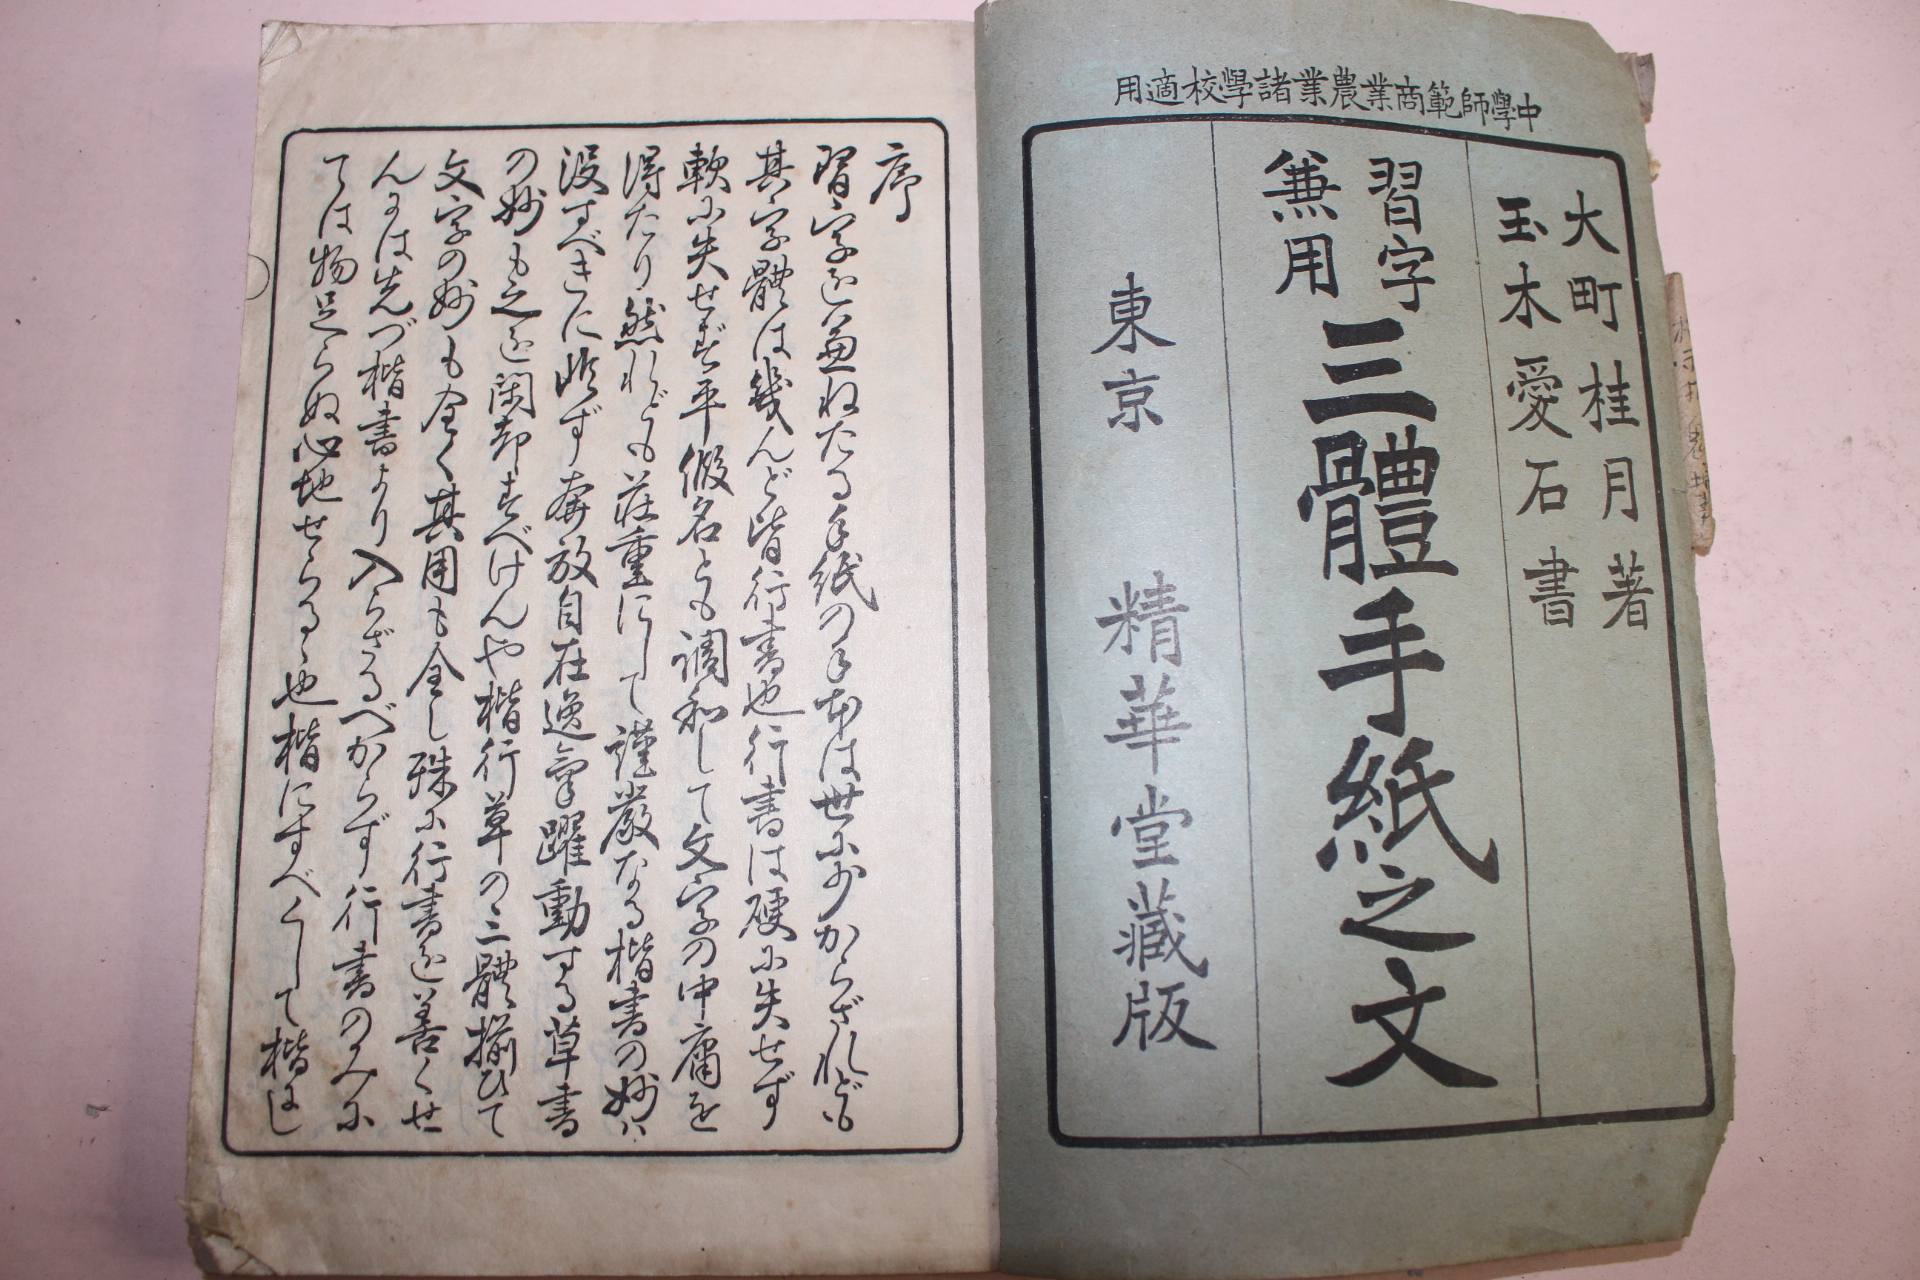 1920년(대정9년) 삼체수지지문(三體手紙之文)